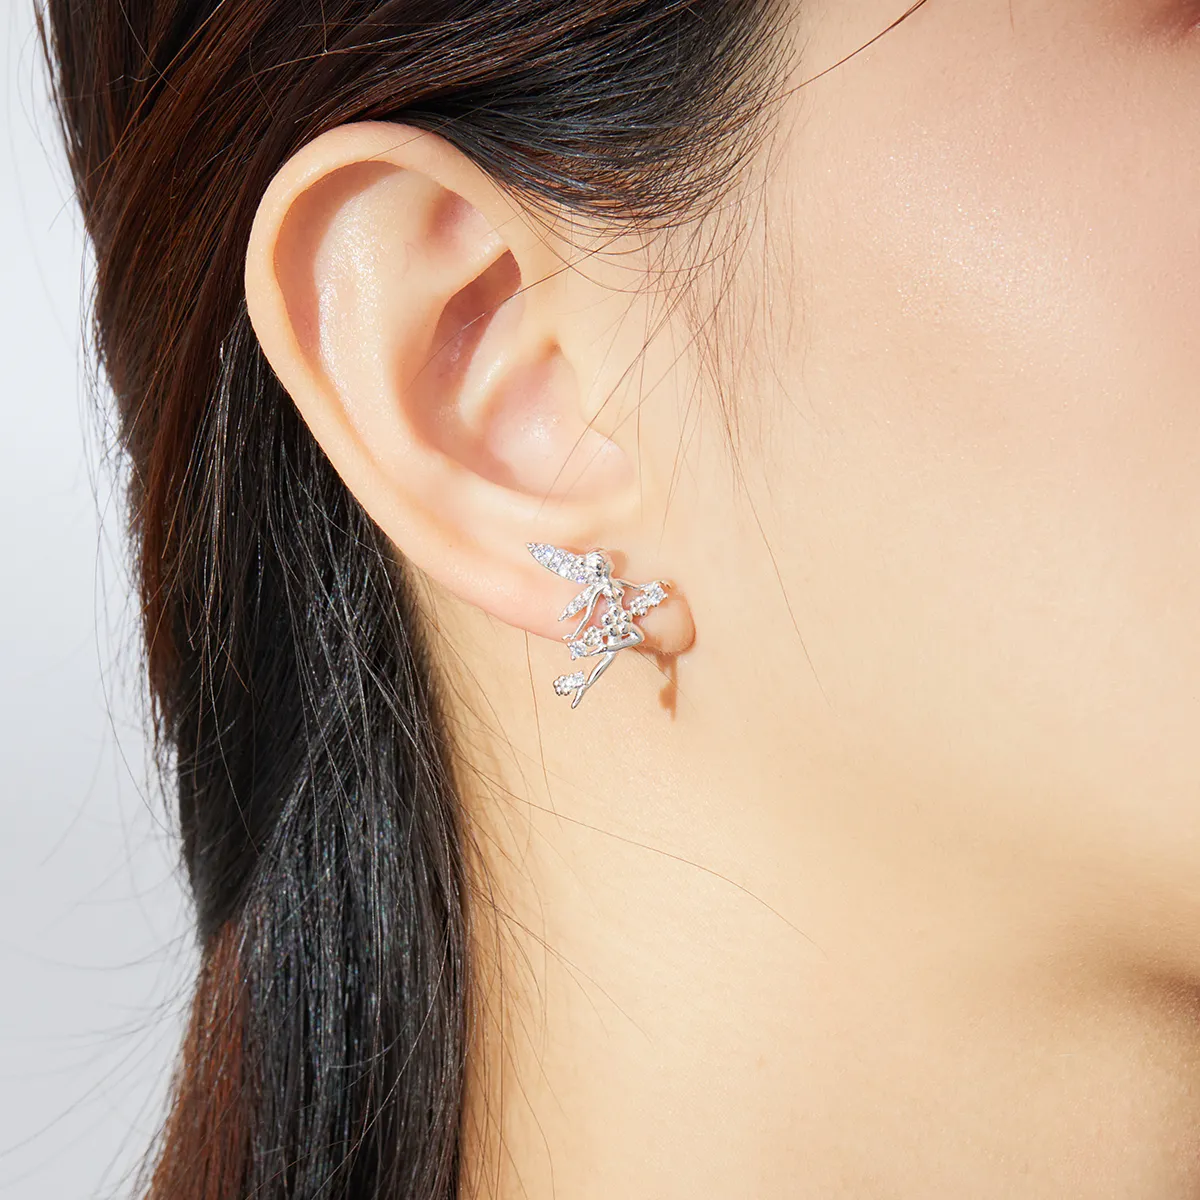 Studuri de urechi în stil Pandora cu motive florale elfice - BSE341